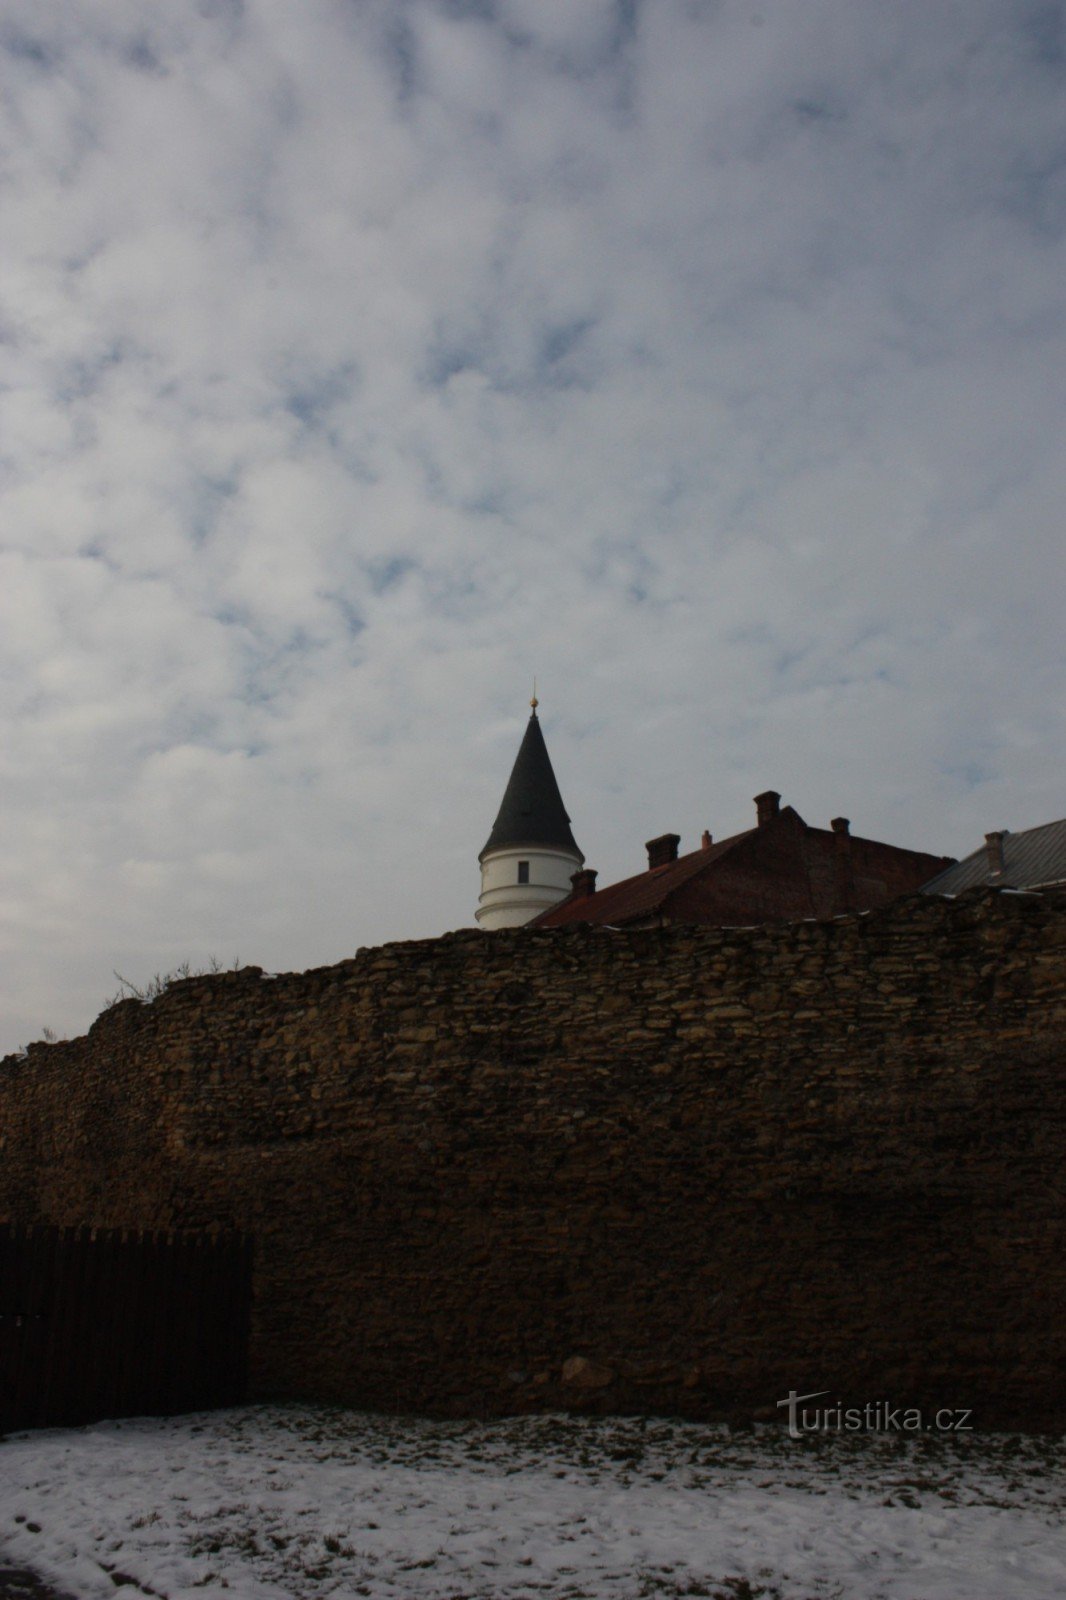 プジェロフの 15 世紀の要塞システムの遺跡